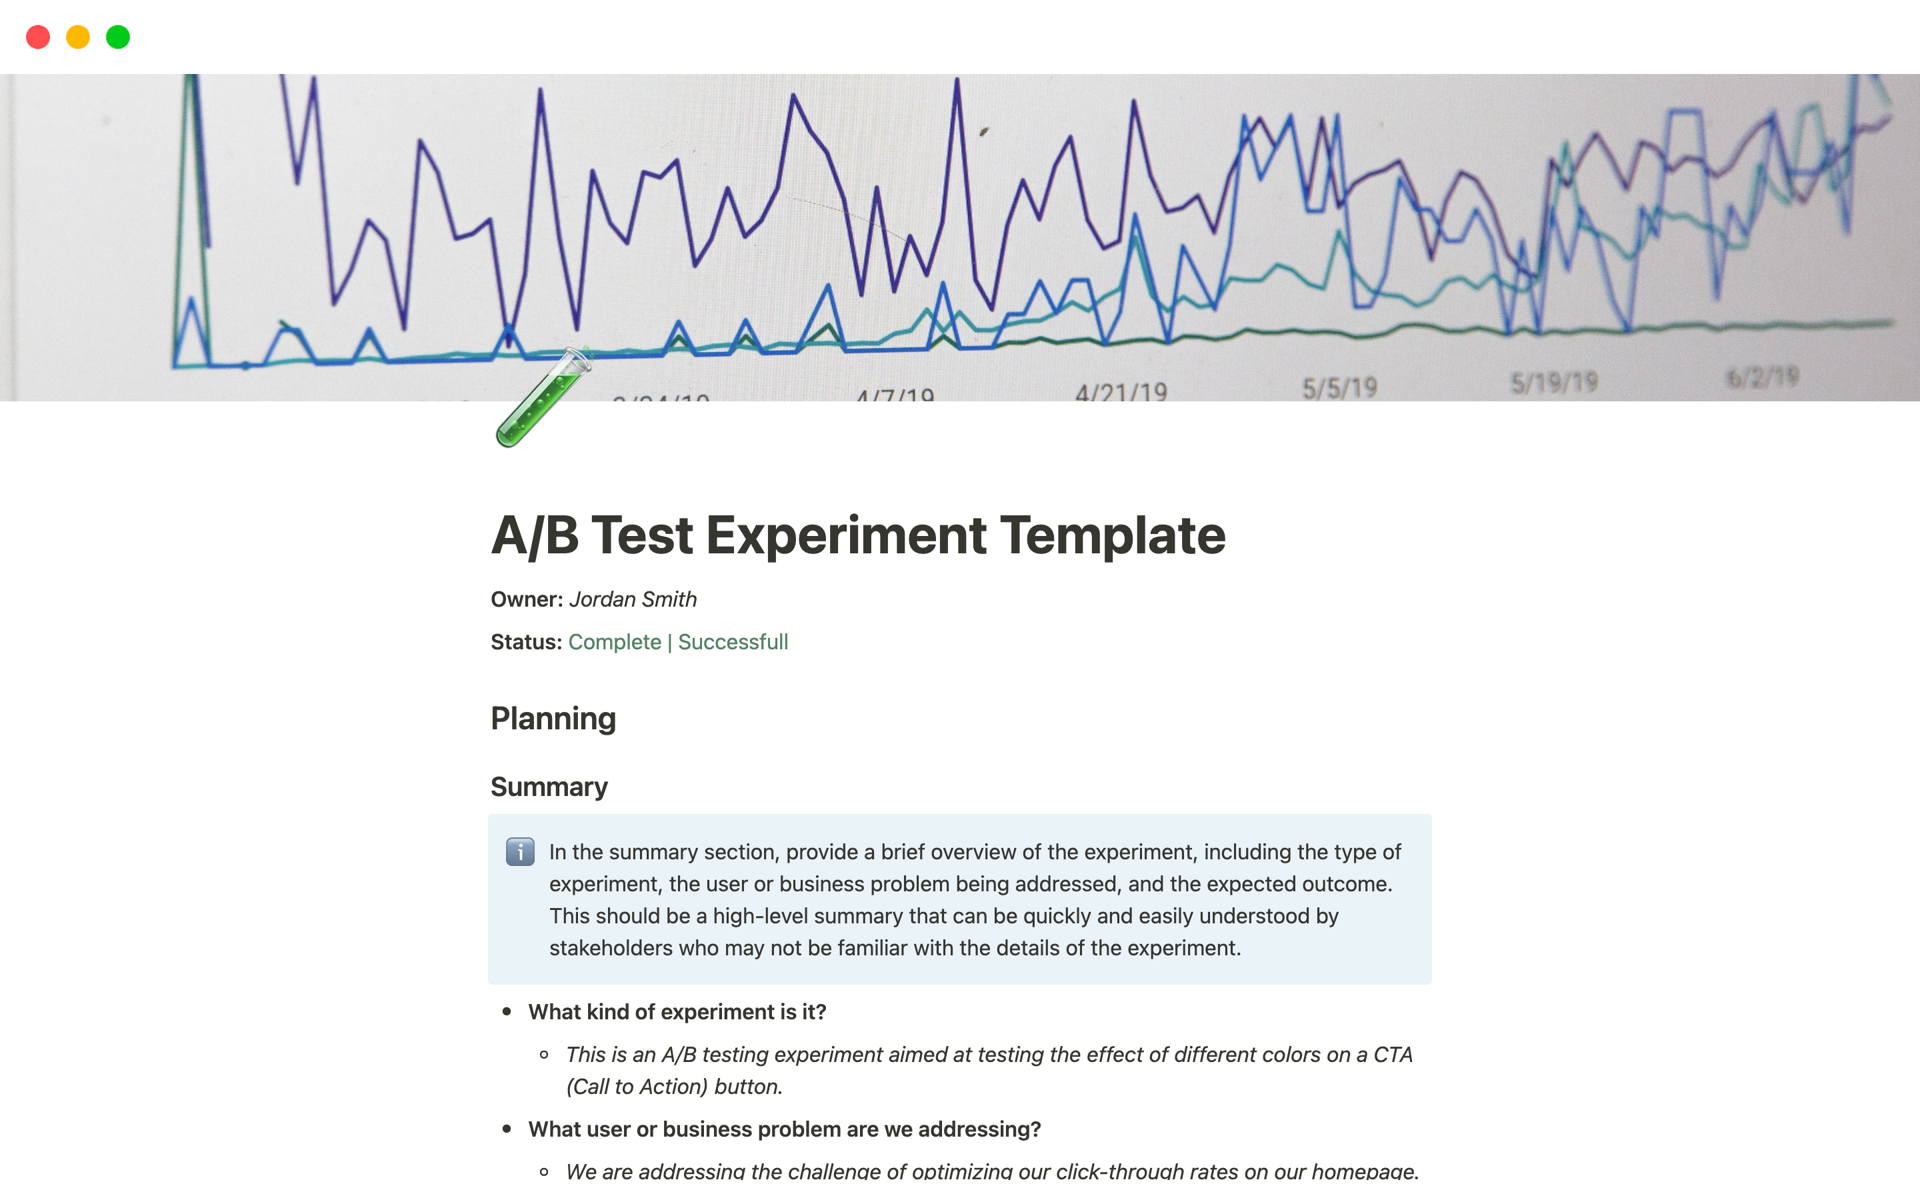 Vista previa de plantilla para A/B Test Experiment Template